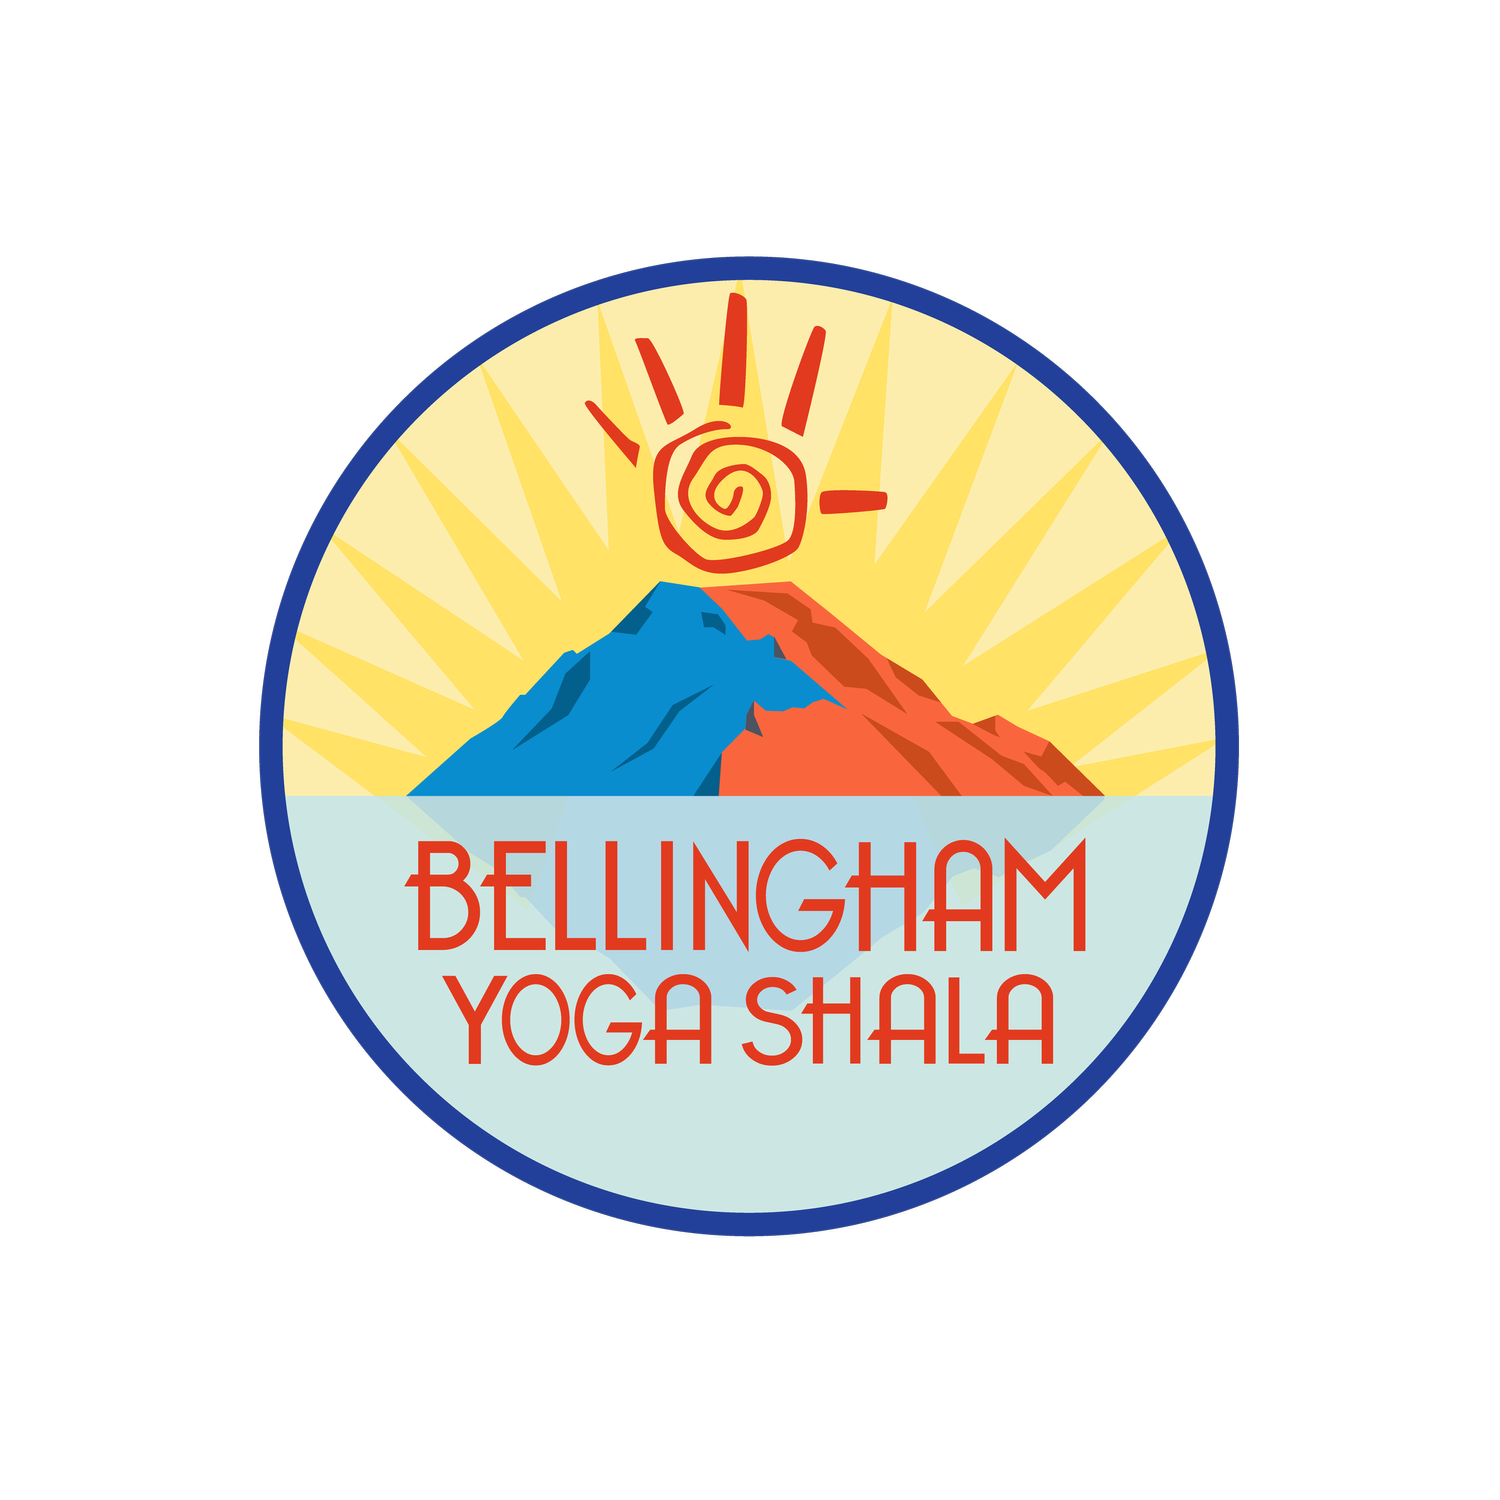 Bellingham Yoga Shala